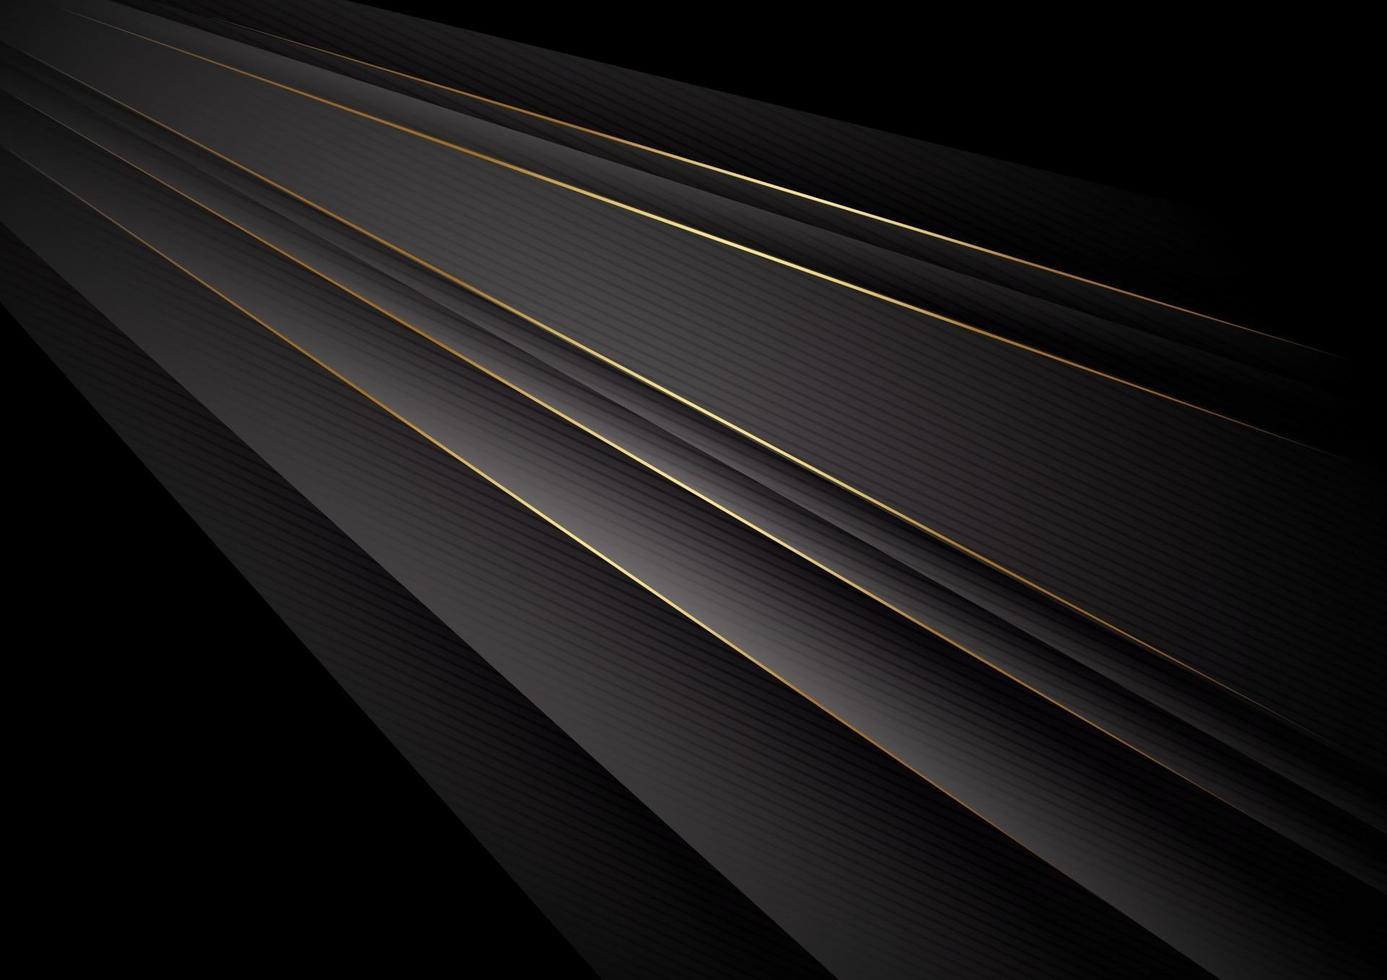 abstracte donkere zwarte kleur achtergrond overlappende lagen gouden lijnen met kopie ruimte voor tekst vector